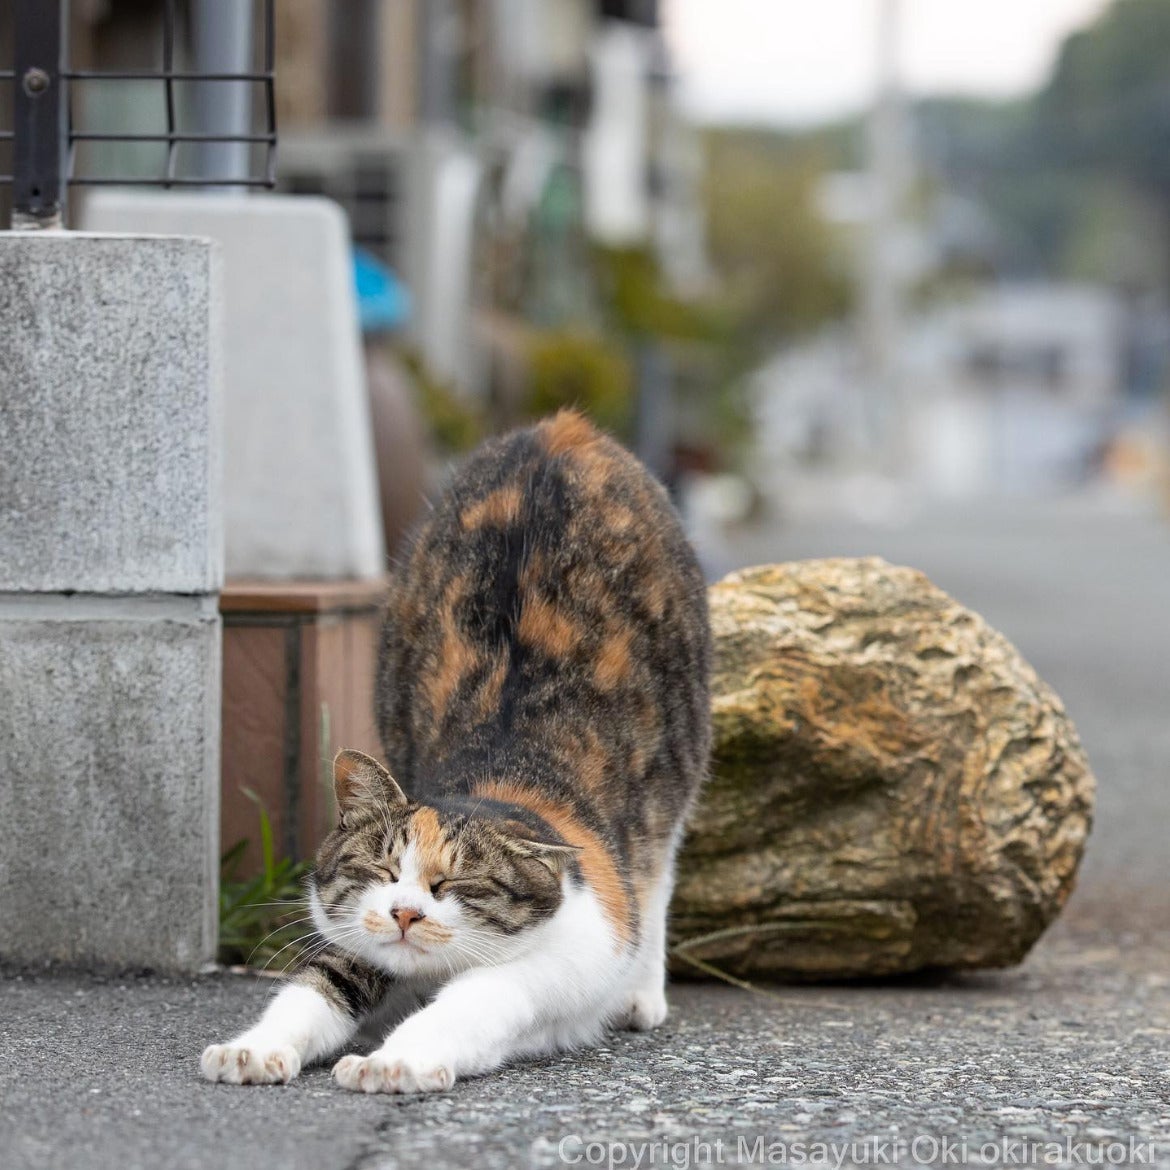 ภาพแมวจรจัด ผลงานจากช่างภาพชาวญี่ปุ่น Masayuki Oki